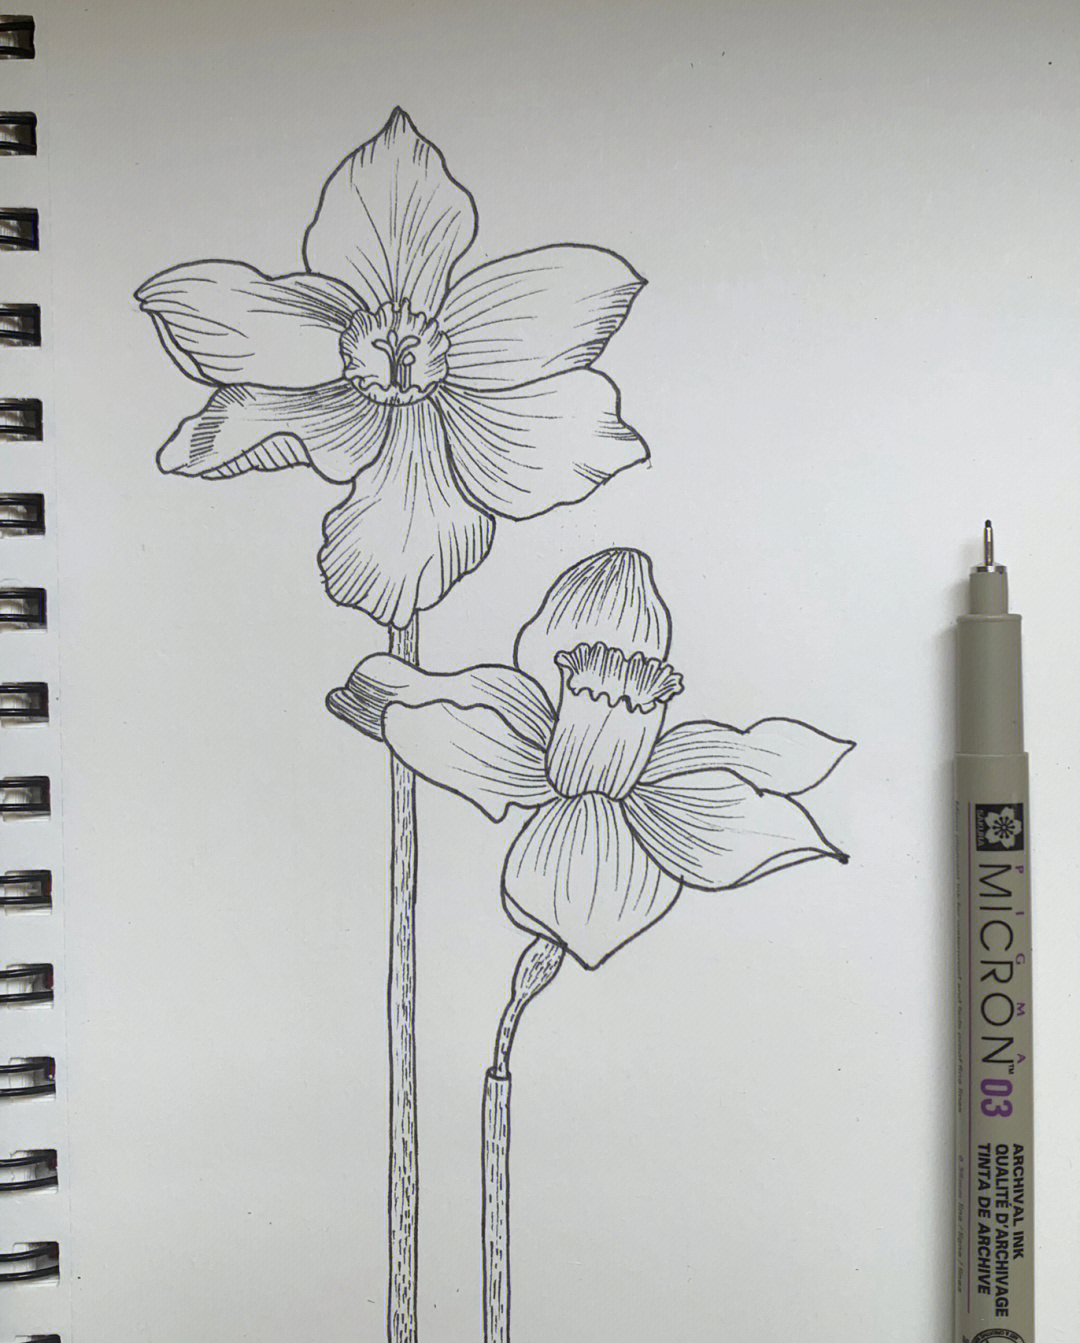 水仙花的画法简单图片